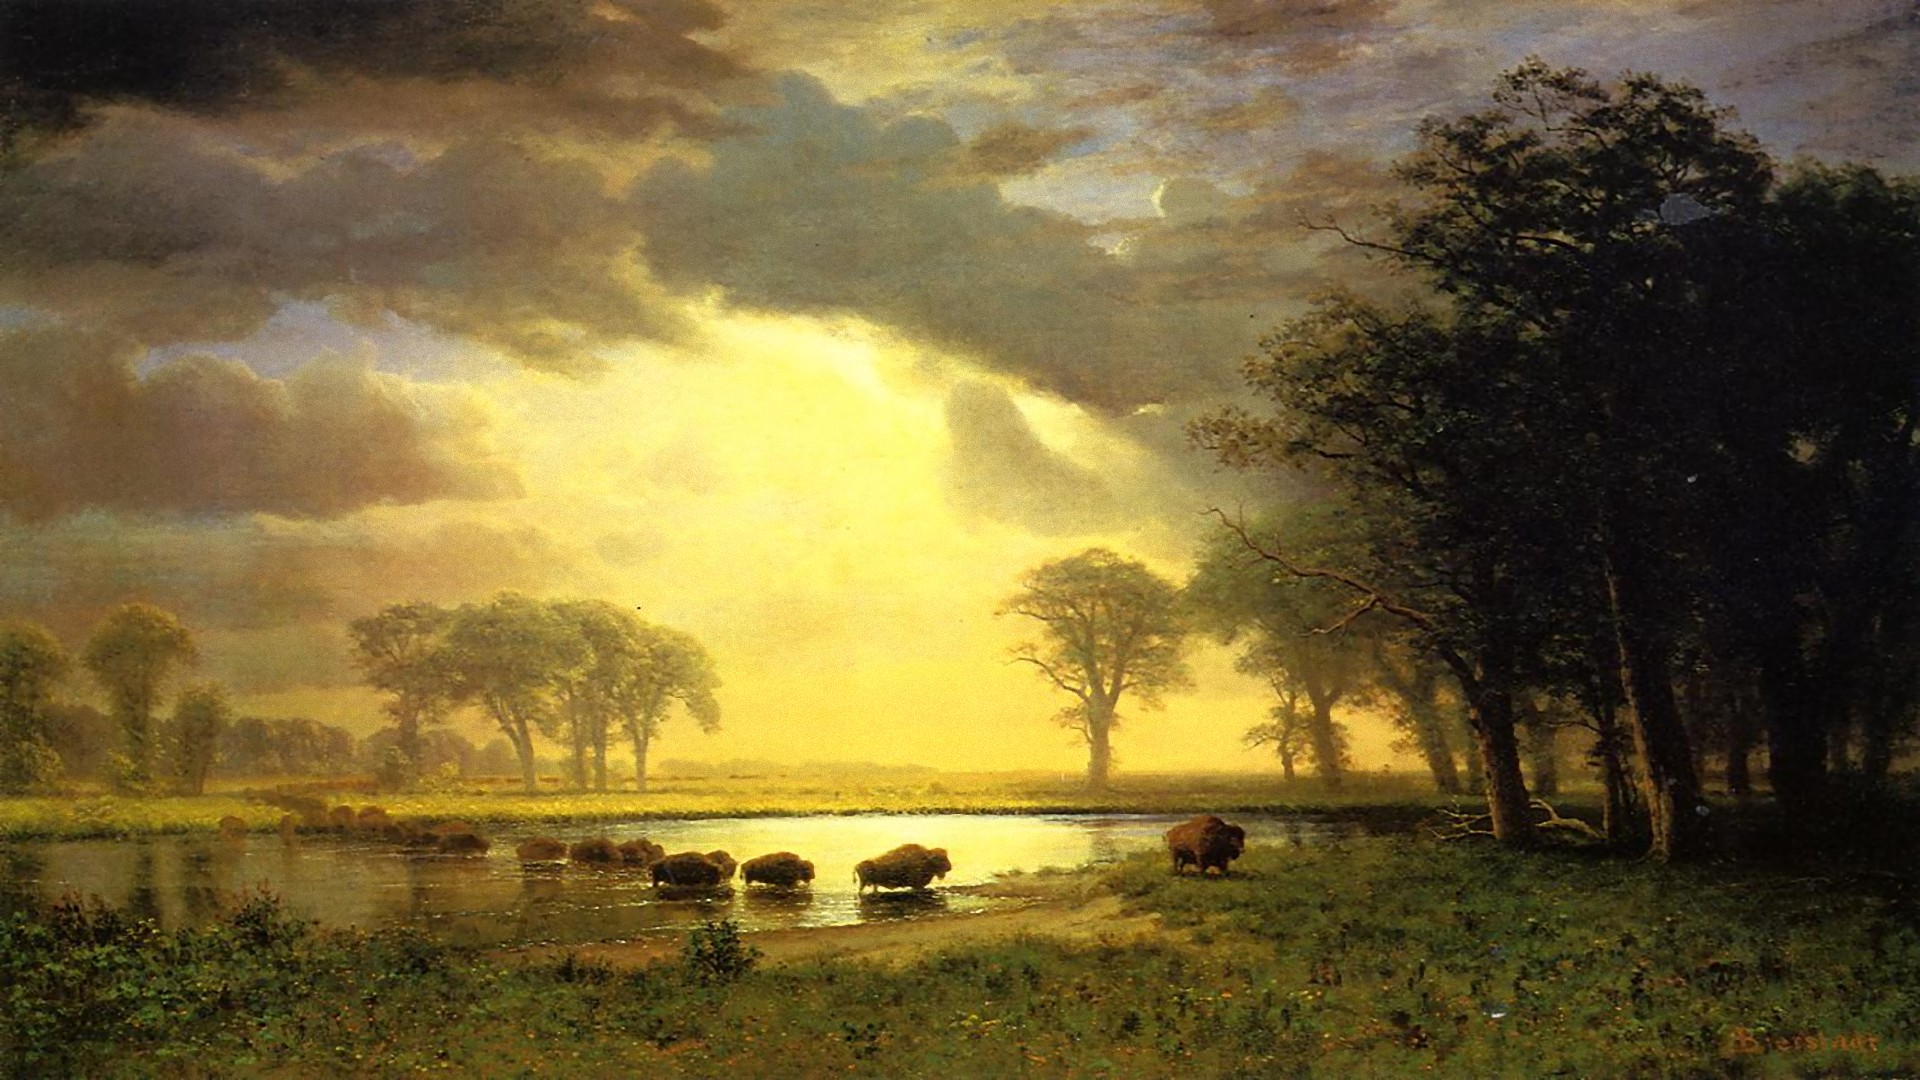 artistic, landscape, buffalo, river